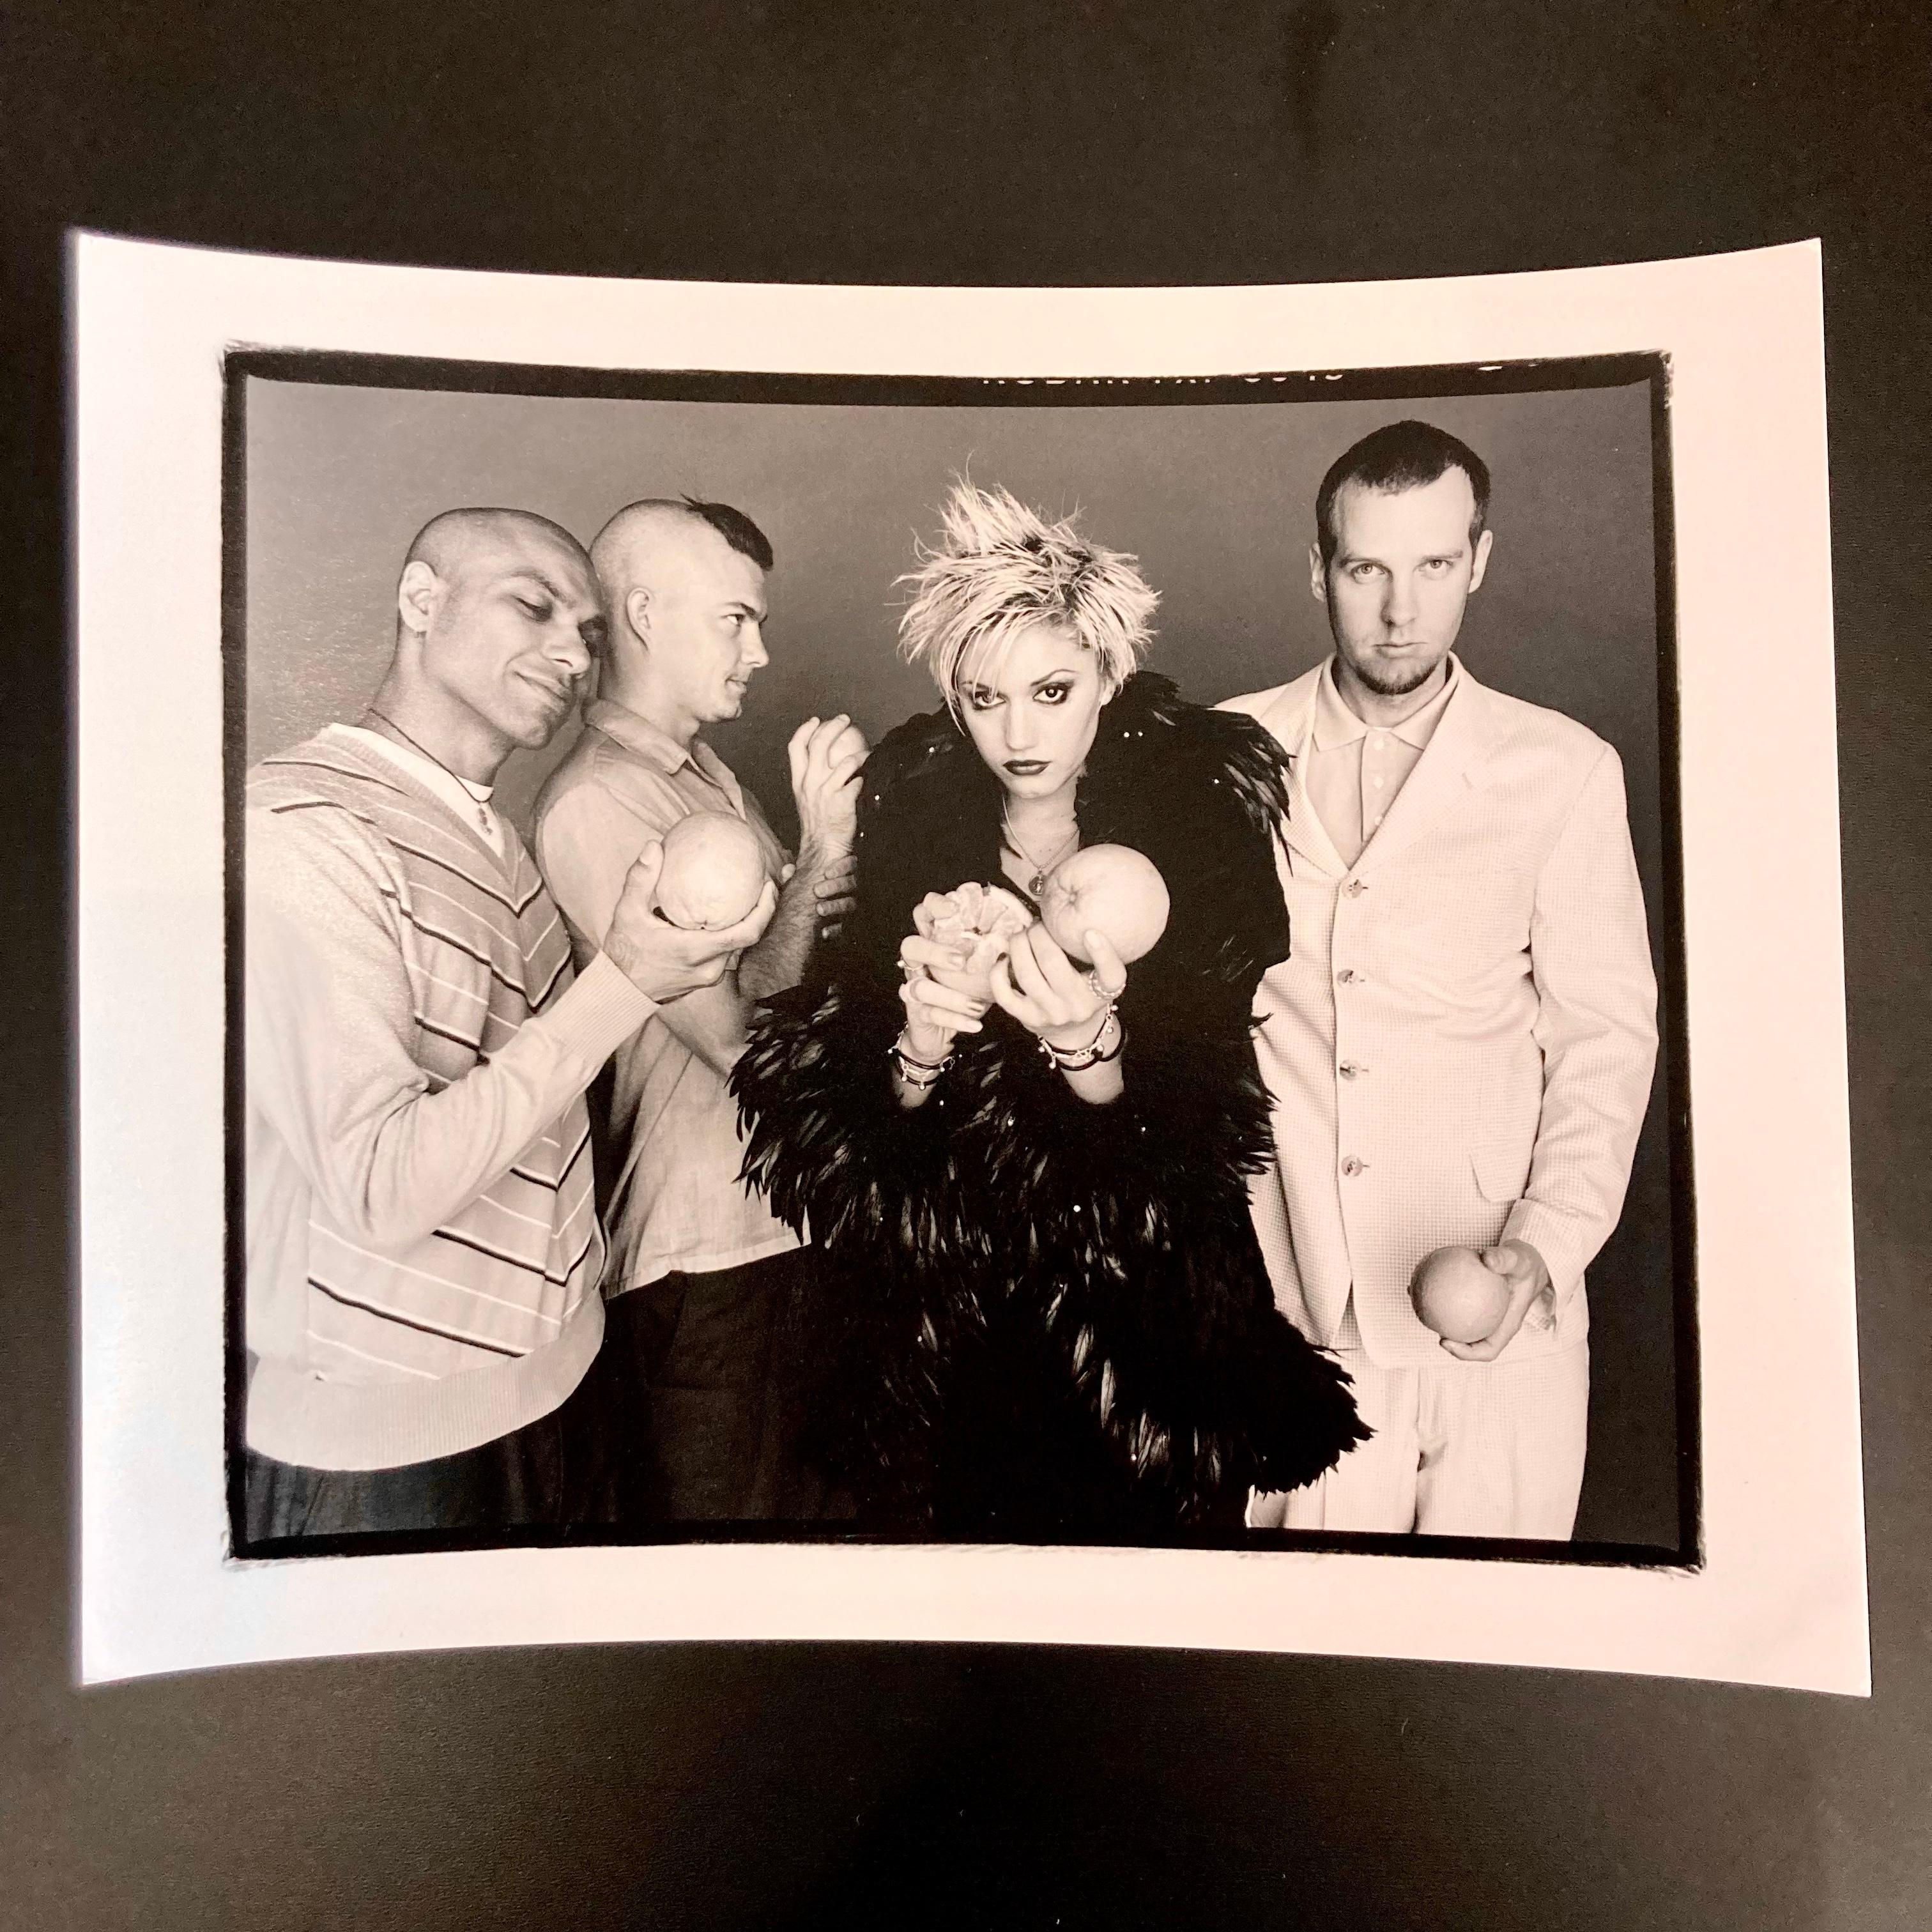 Gwen Stefani mit der Ska-Band No Doubt, 8 "x10" Handbedruckter Dunkelkammerabzug, der zum Zeitpunkt der Aufnahme 1997 gemacht und flach in einer temperaturgeregelten Umgebung gelagert wurde.

Der Druck ist in einwandfreiem, neuem Zustand ohne